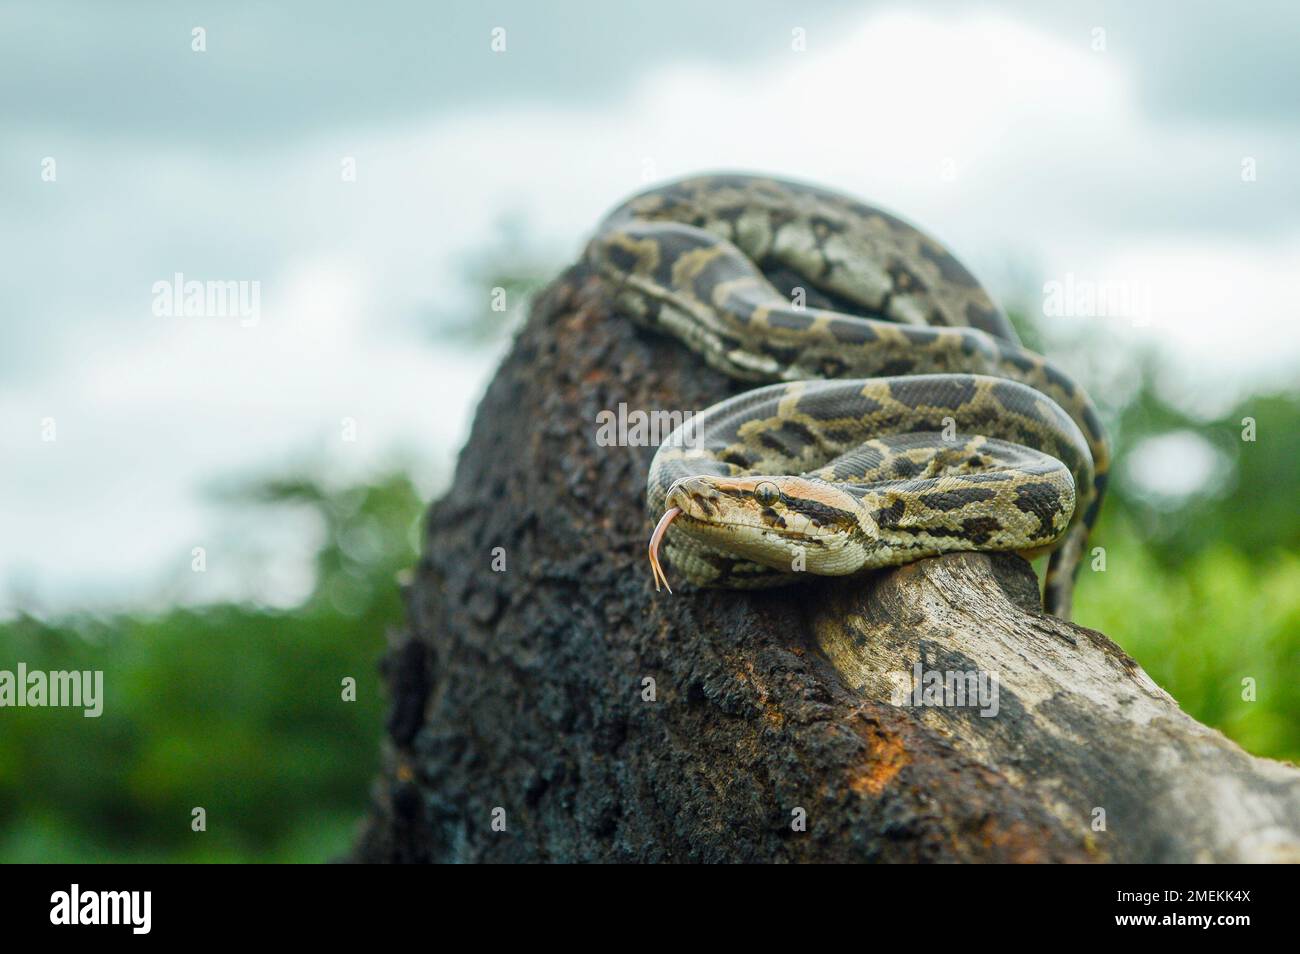 Python indien, Python molurus est une grande espèce de python non venimeux originaire des régions tropicales et subtropicales du sous-continent indien, Mumbai, Ma Banque D'Images